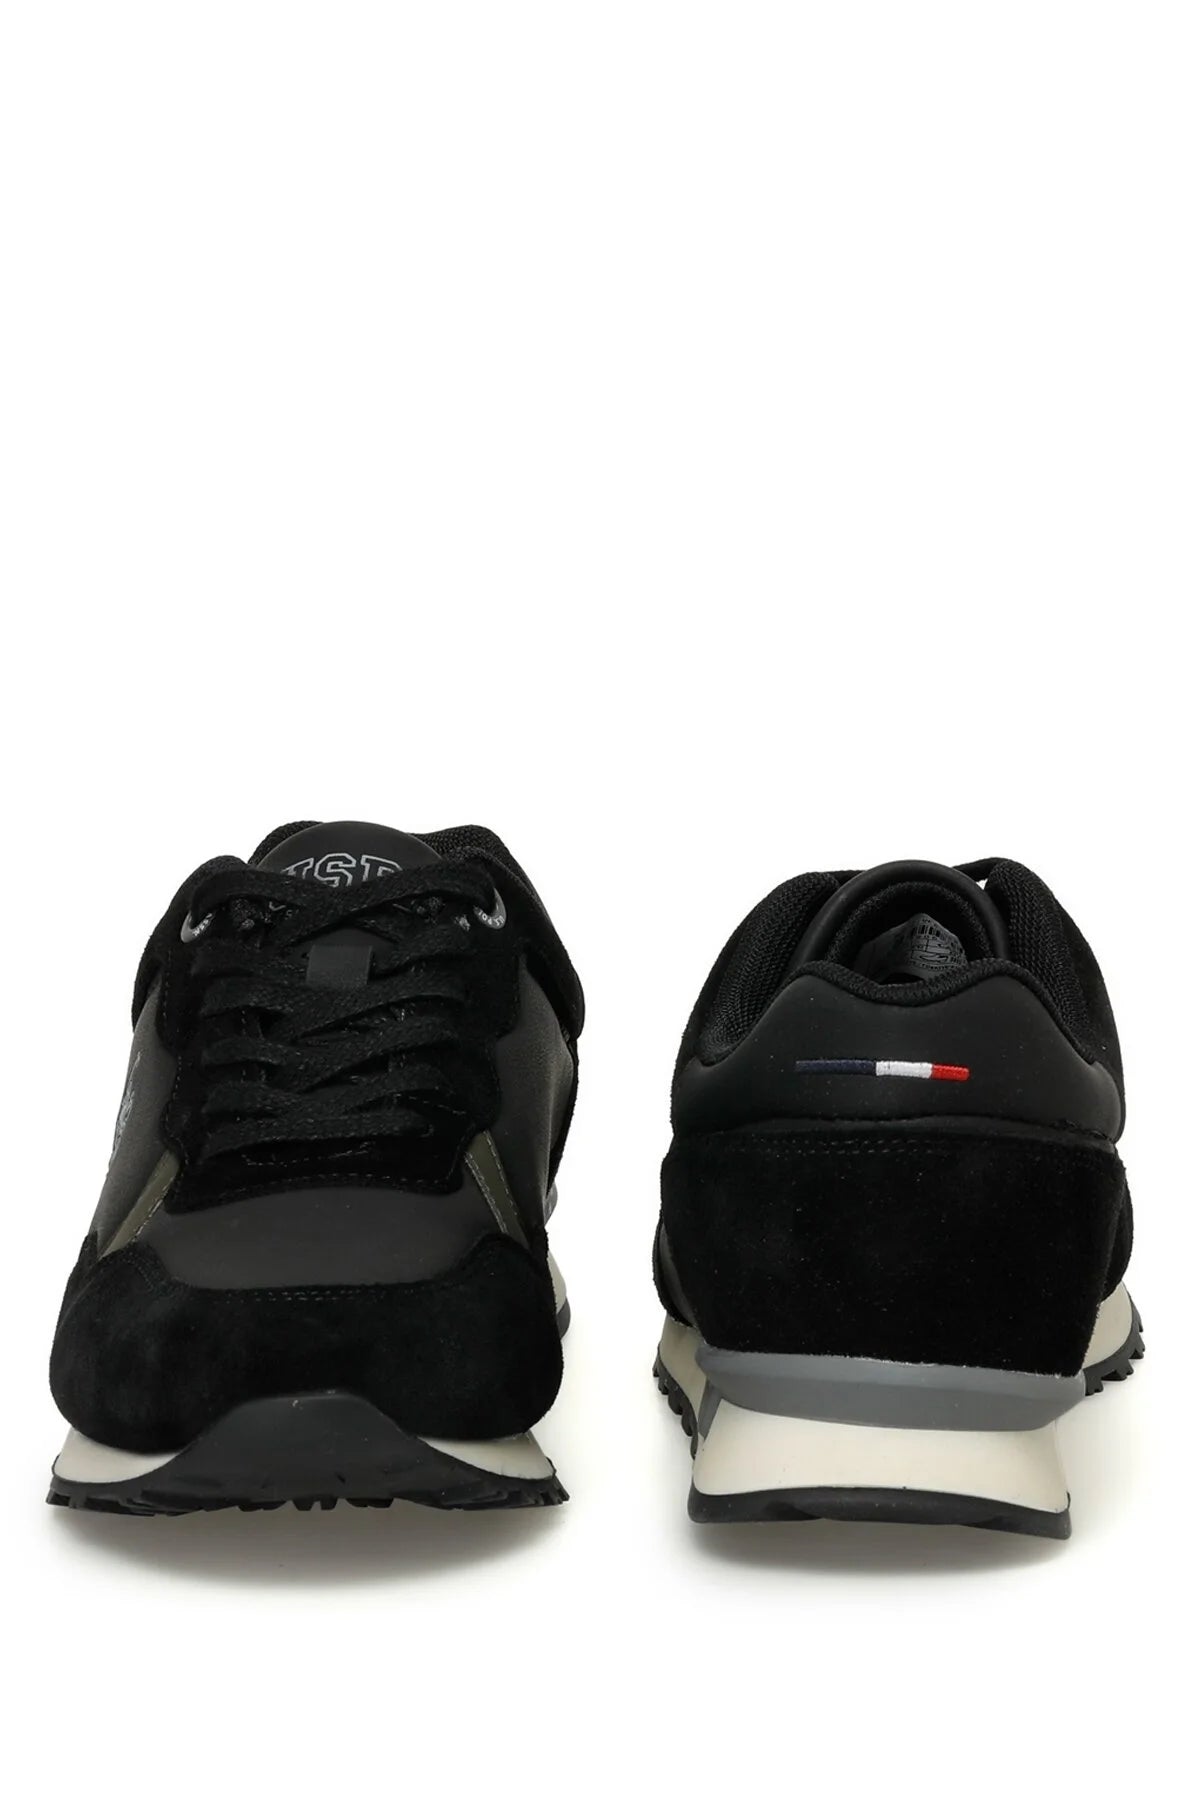 Chaussure CARLO 3PR Noire Pour Homme - 101399315